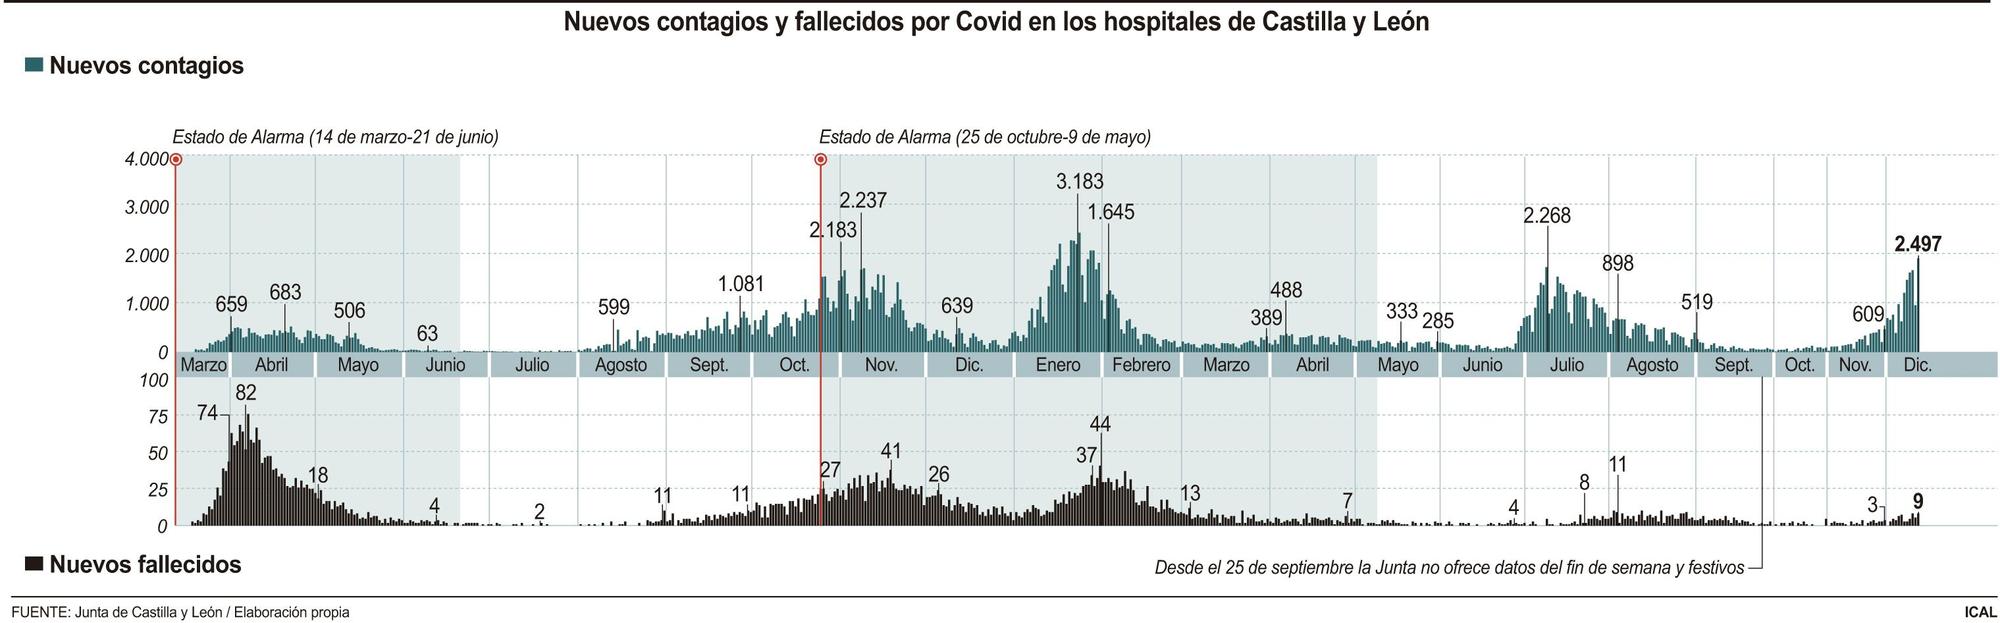 Nuevos contagios y fallecidos por Covid en los hospitales de Castilla y León.